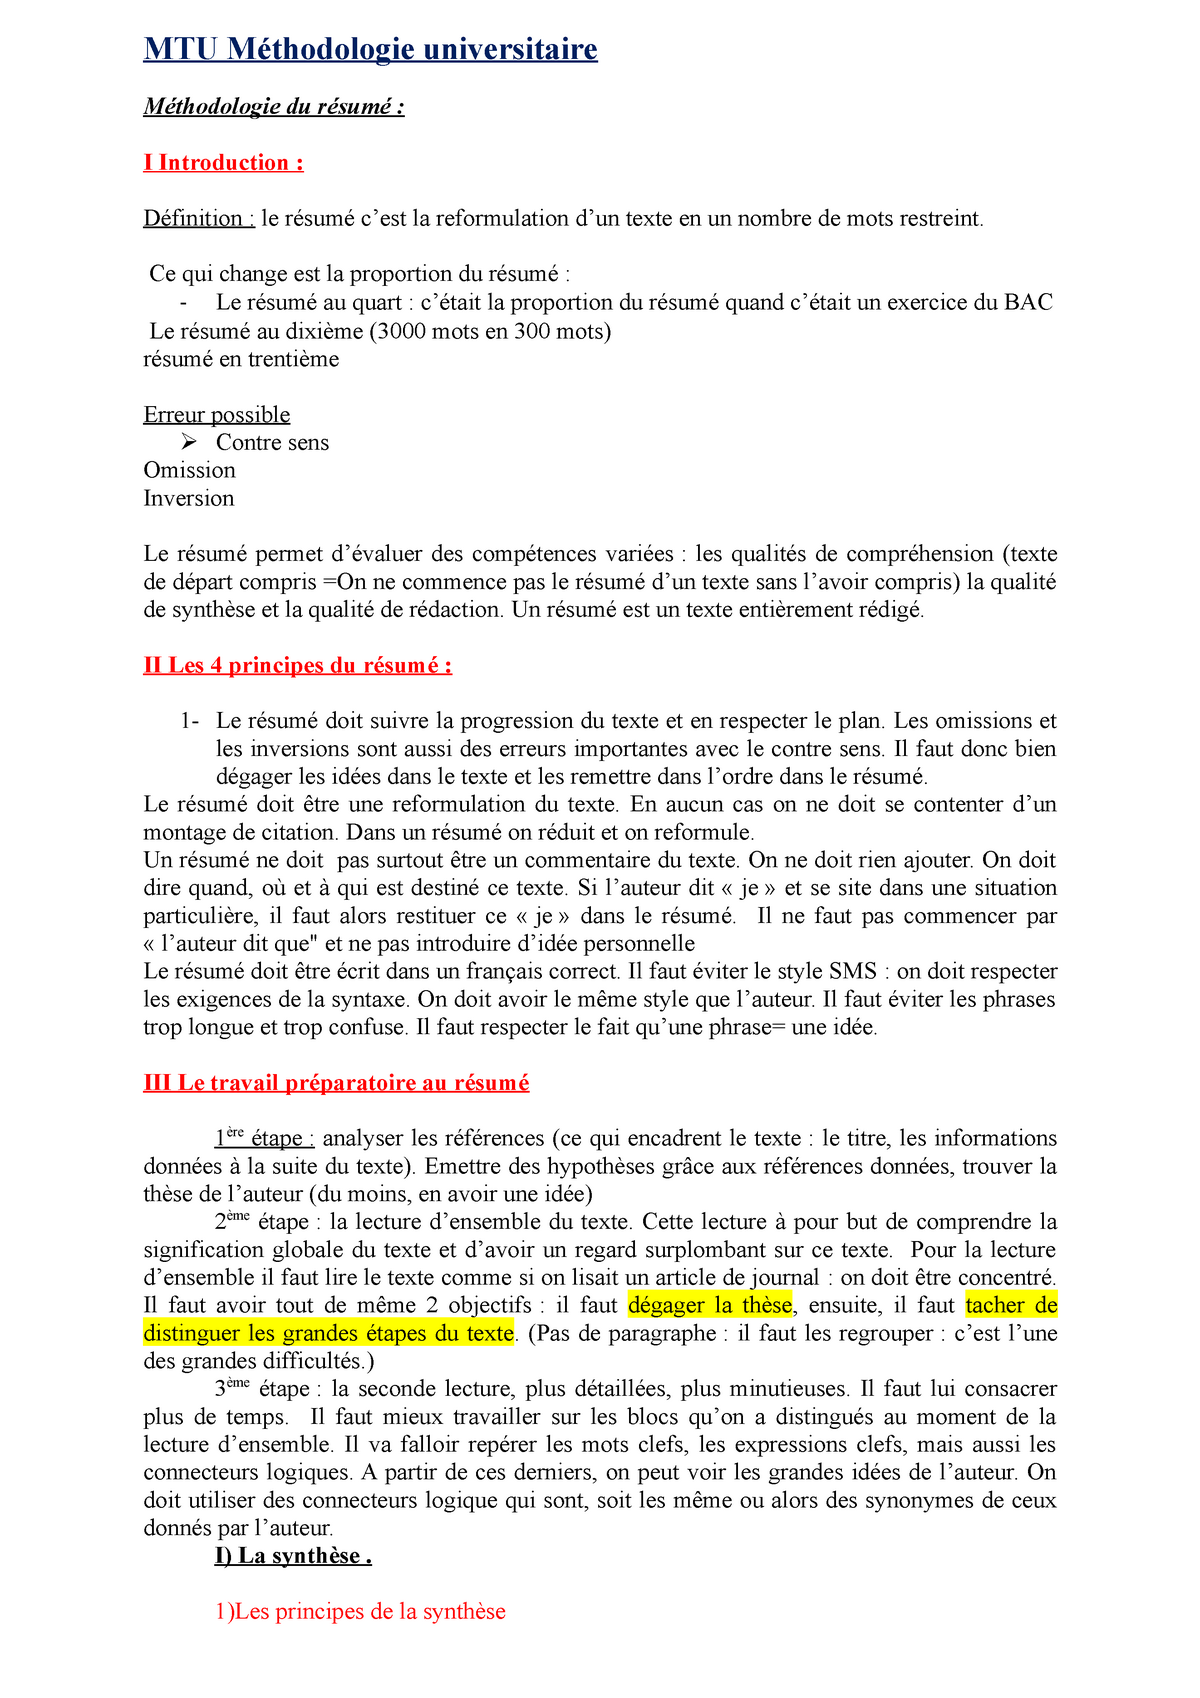 Synthese Mtu Methodologie Universitaire Methodologie Du Resume I Introduction Definition Le Studocu